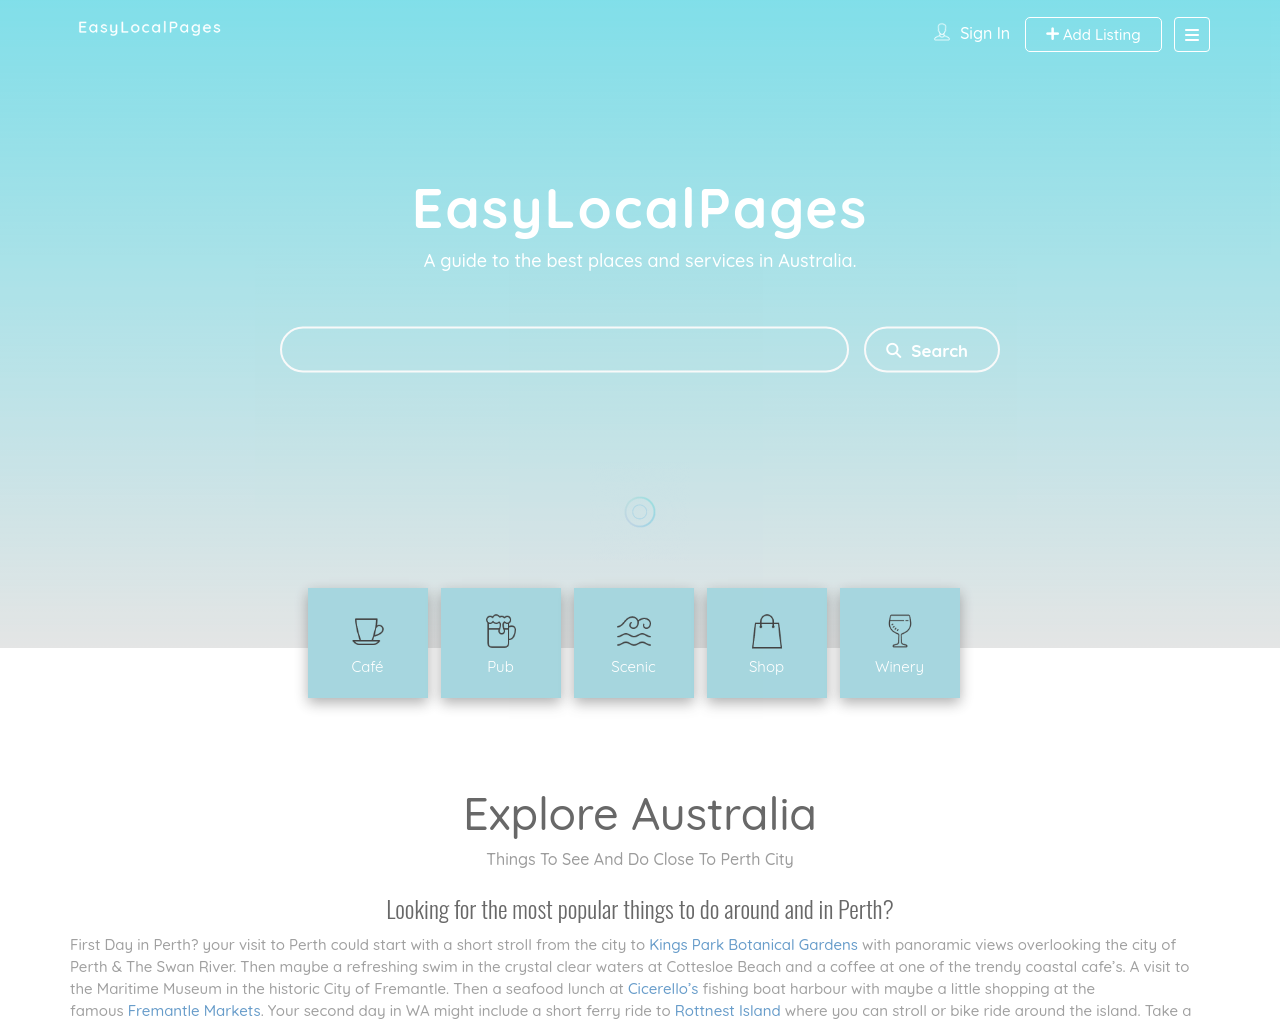 easylocalpages.com.au